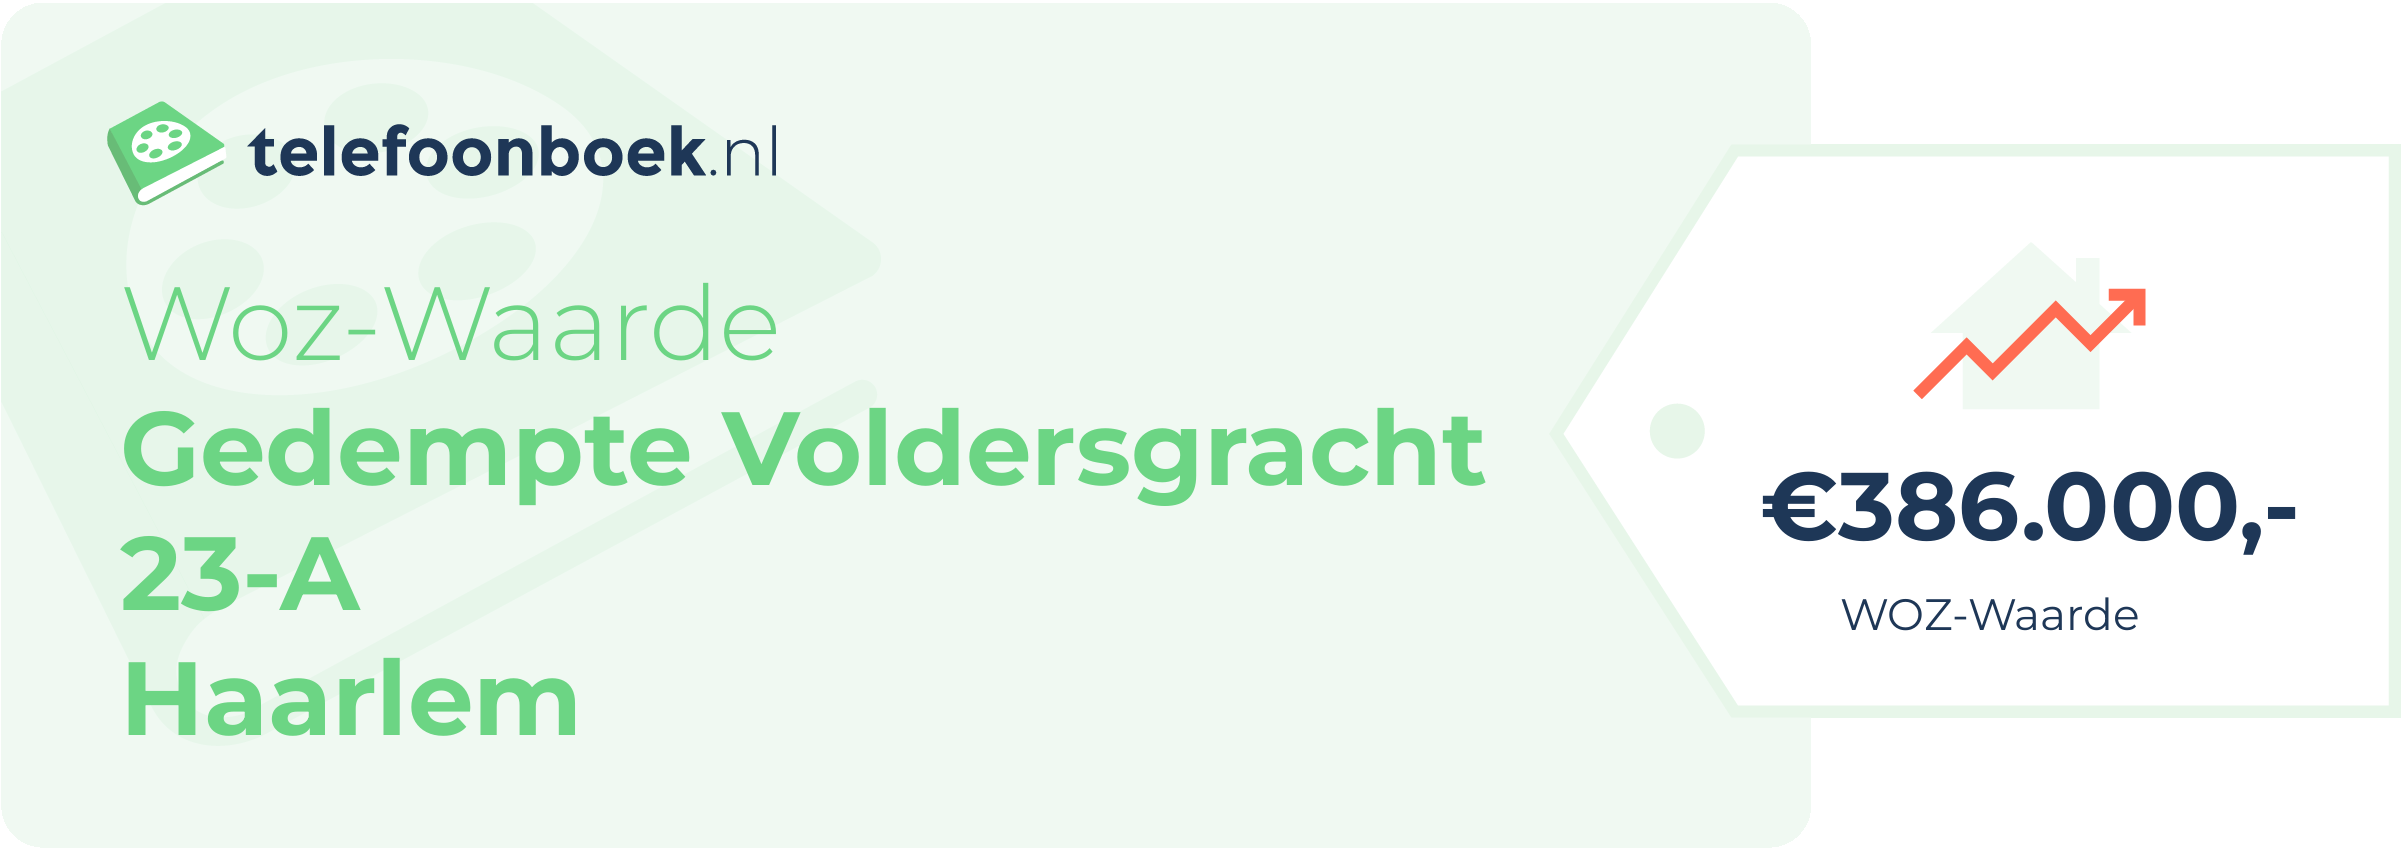 WOZ-waarde Gedempte Voldersgracht 23-A Haarlem